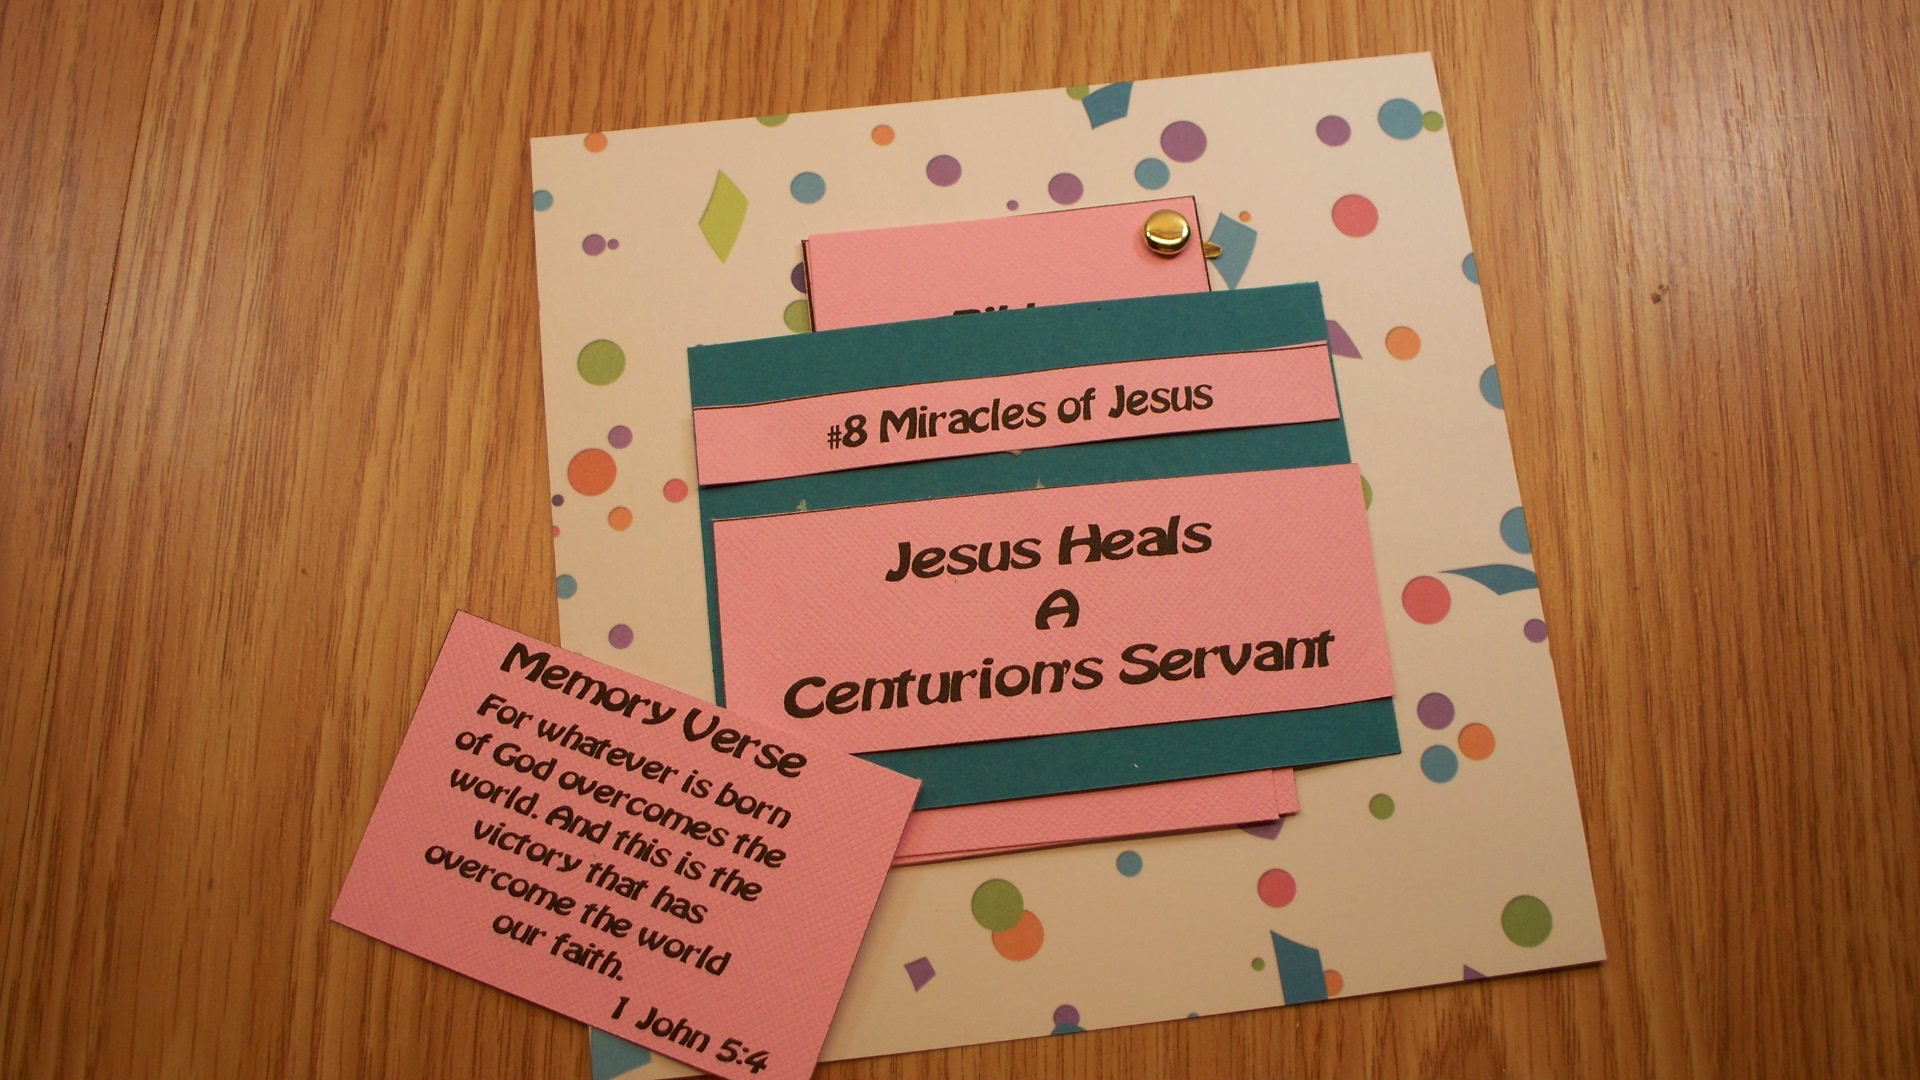 Jesus Heals a Centurion’s Servant